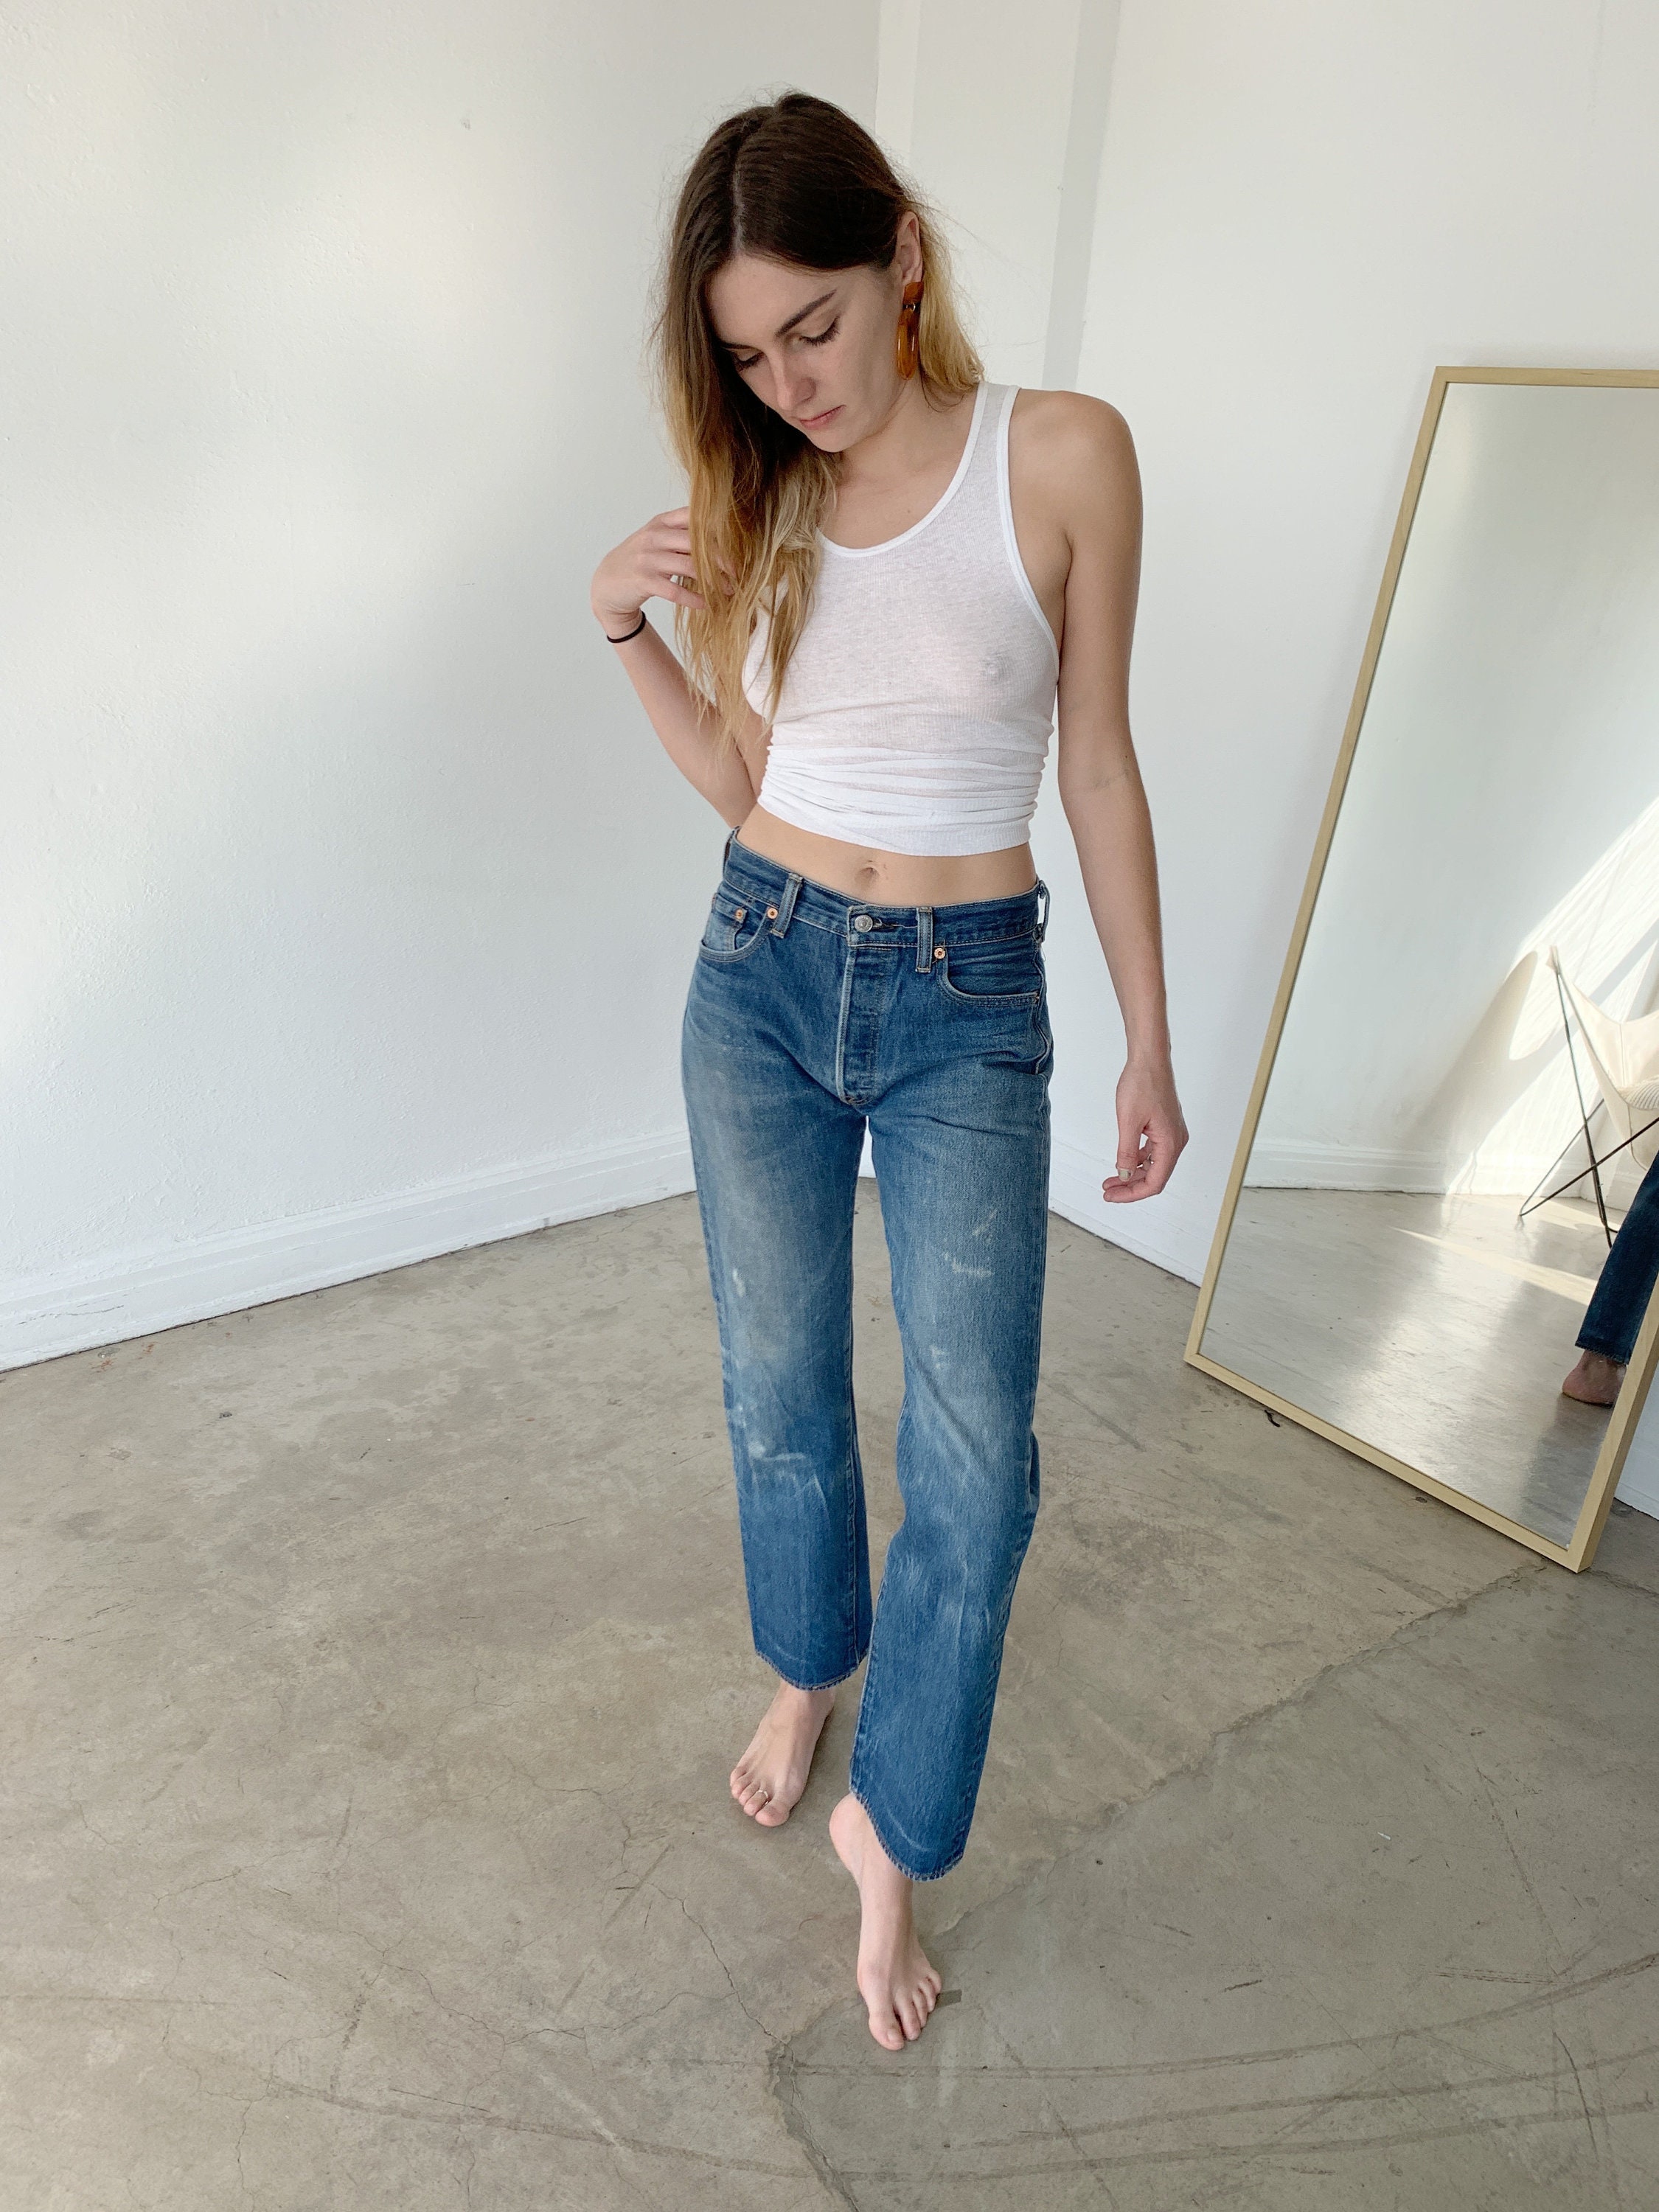 size 28 jeans levis